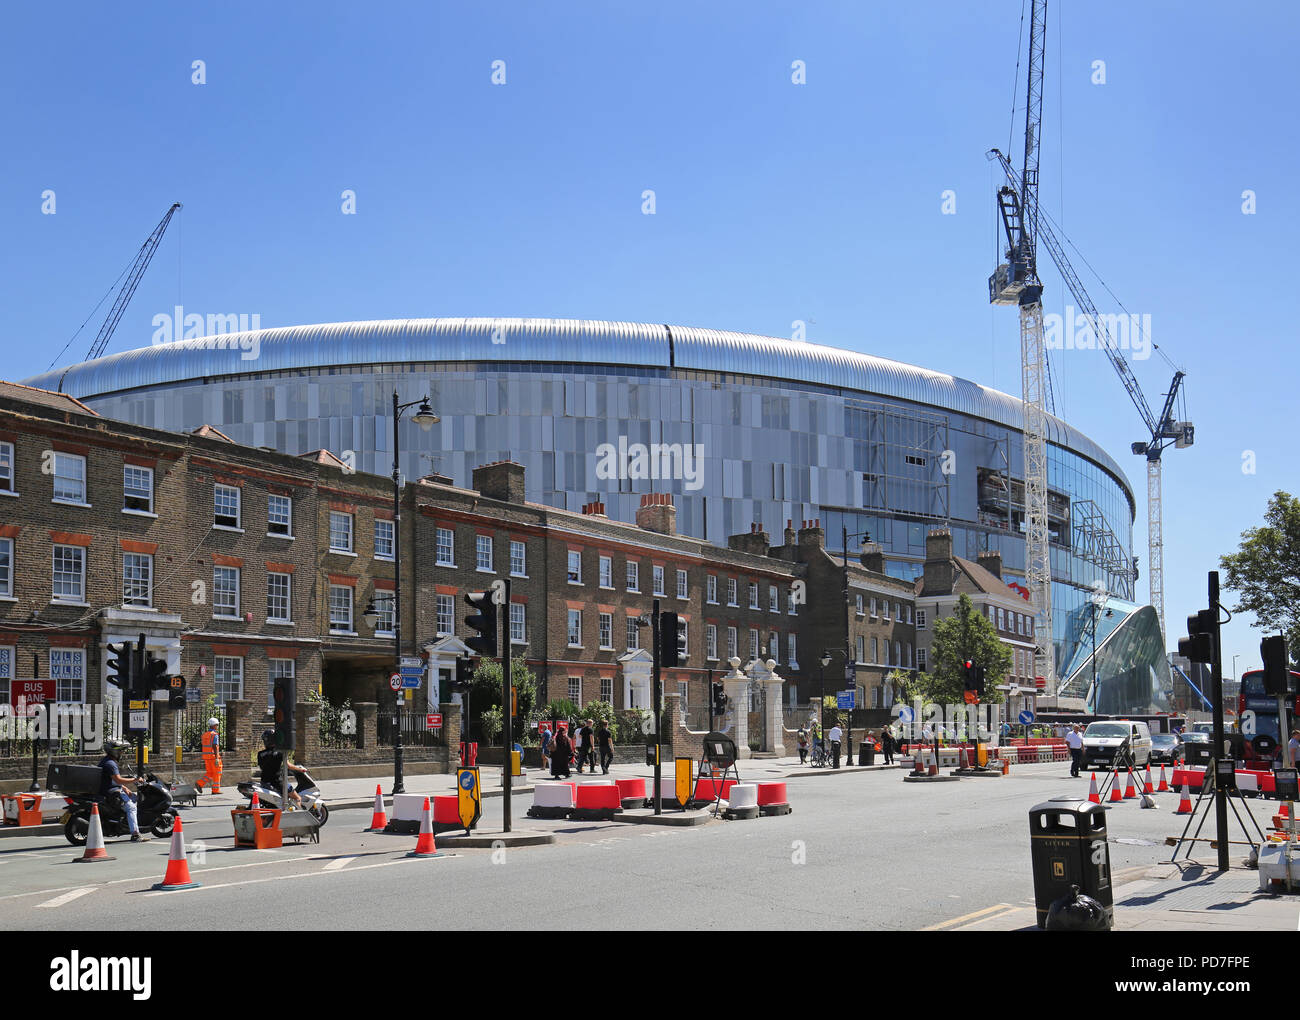 Das neue Stadion des englischen Premier League-Teams Tottenham Hotspur stellt lokale Häuser in der White Hart Lane in London in den Schatten. Kurz vor der Fertigstellung (August 2018). Stockfoto